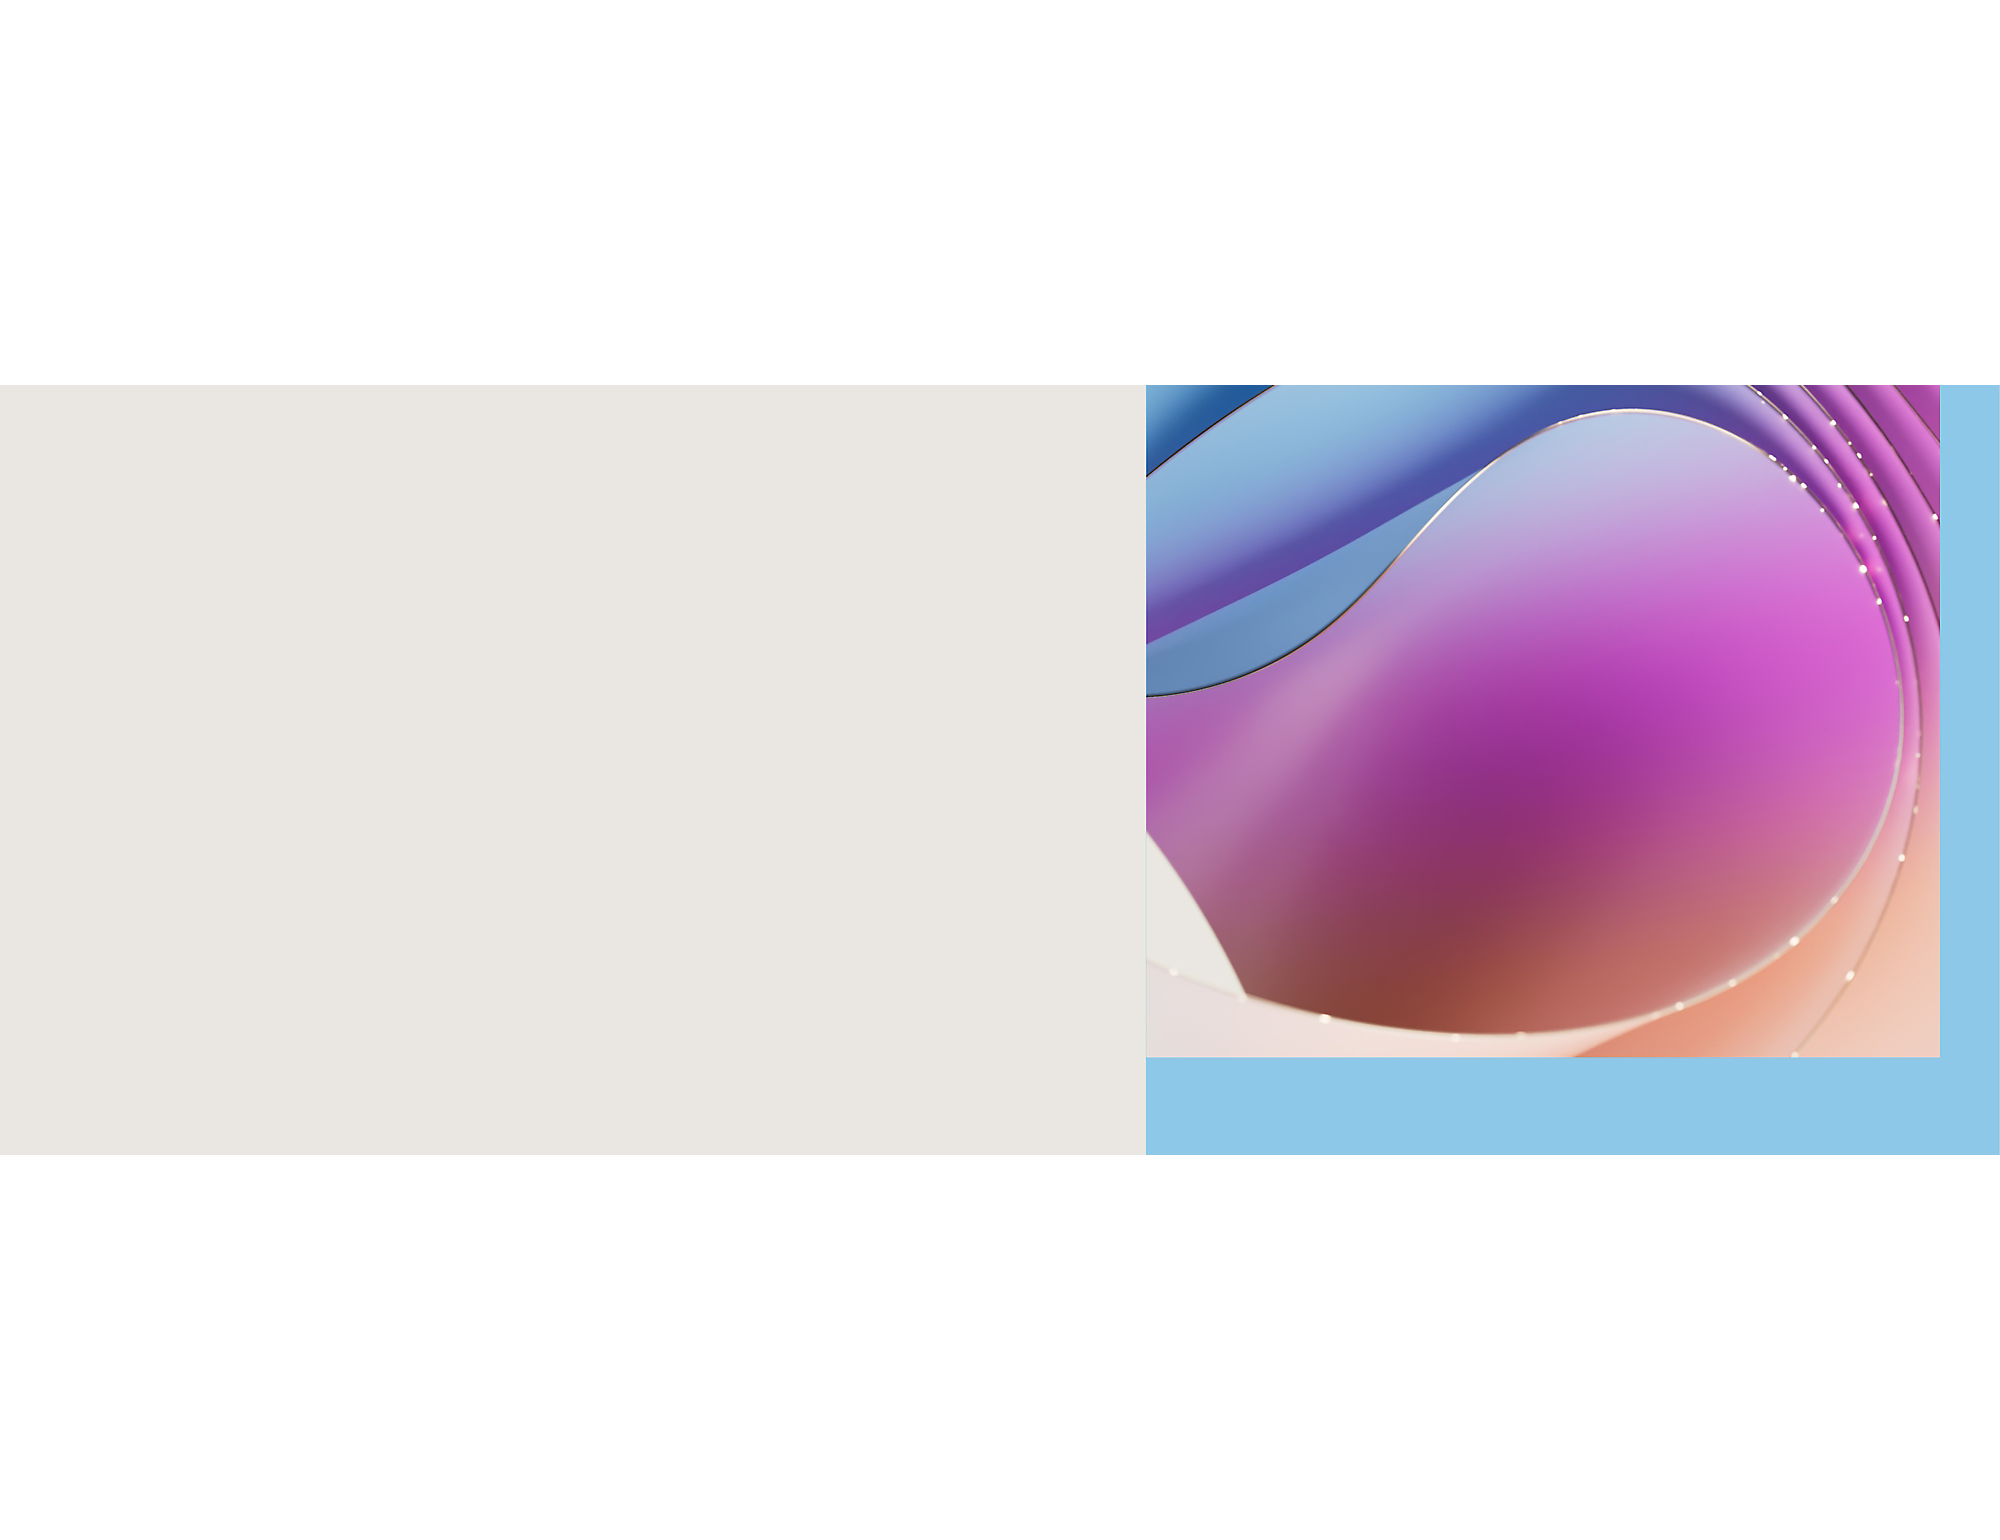 Illustration numérique abstraite présentant des formes fluides et fluides dans des nuances de bleu et de violet avec des détails en pointillés.